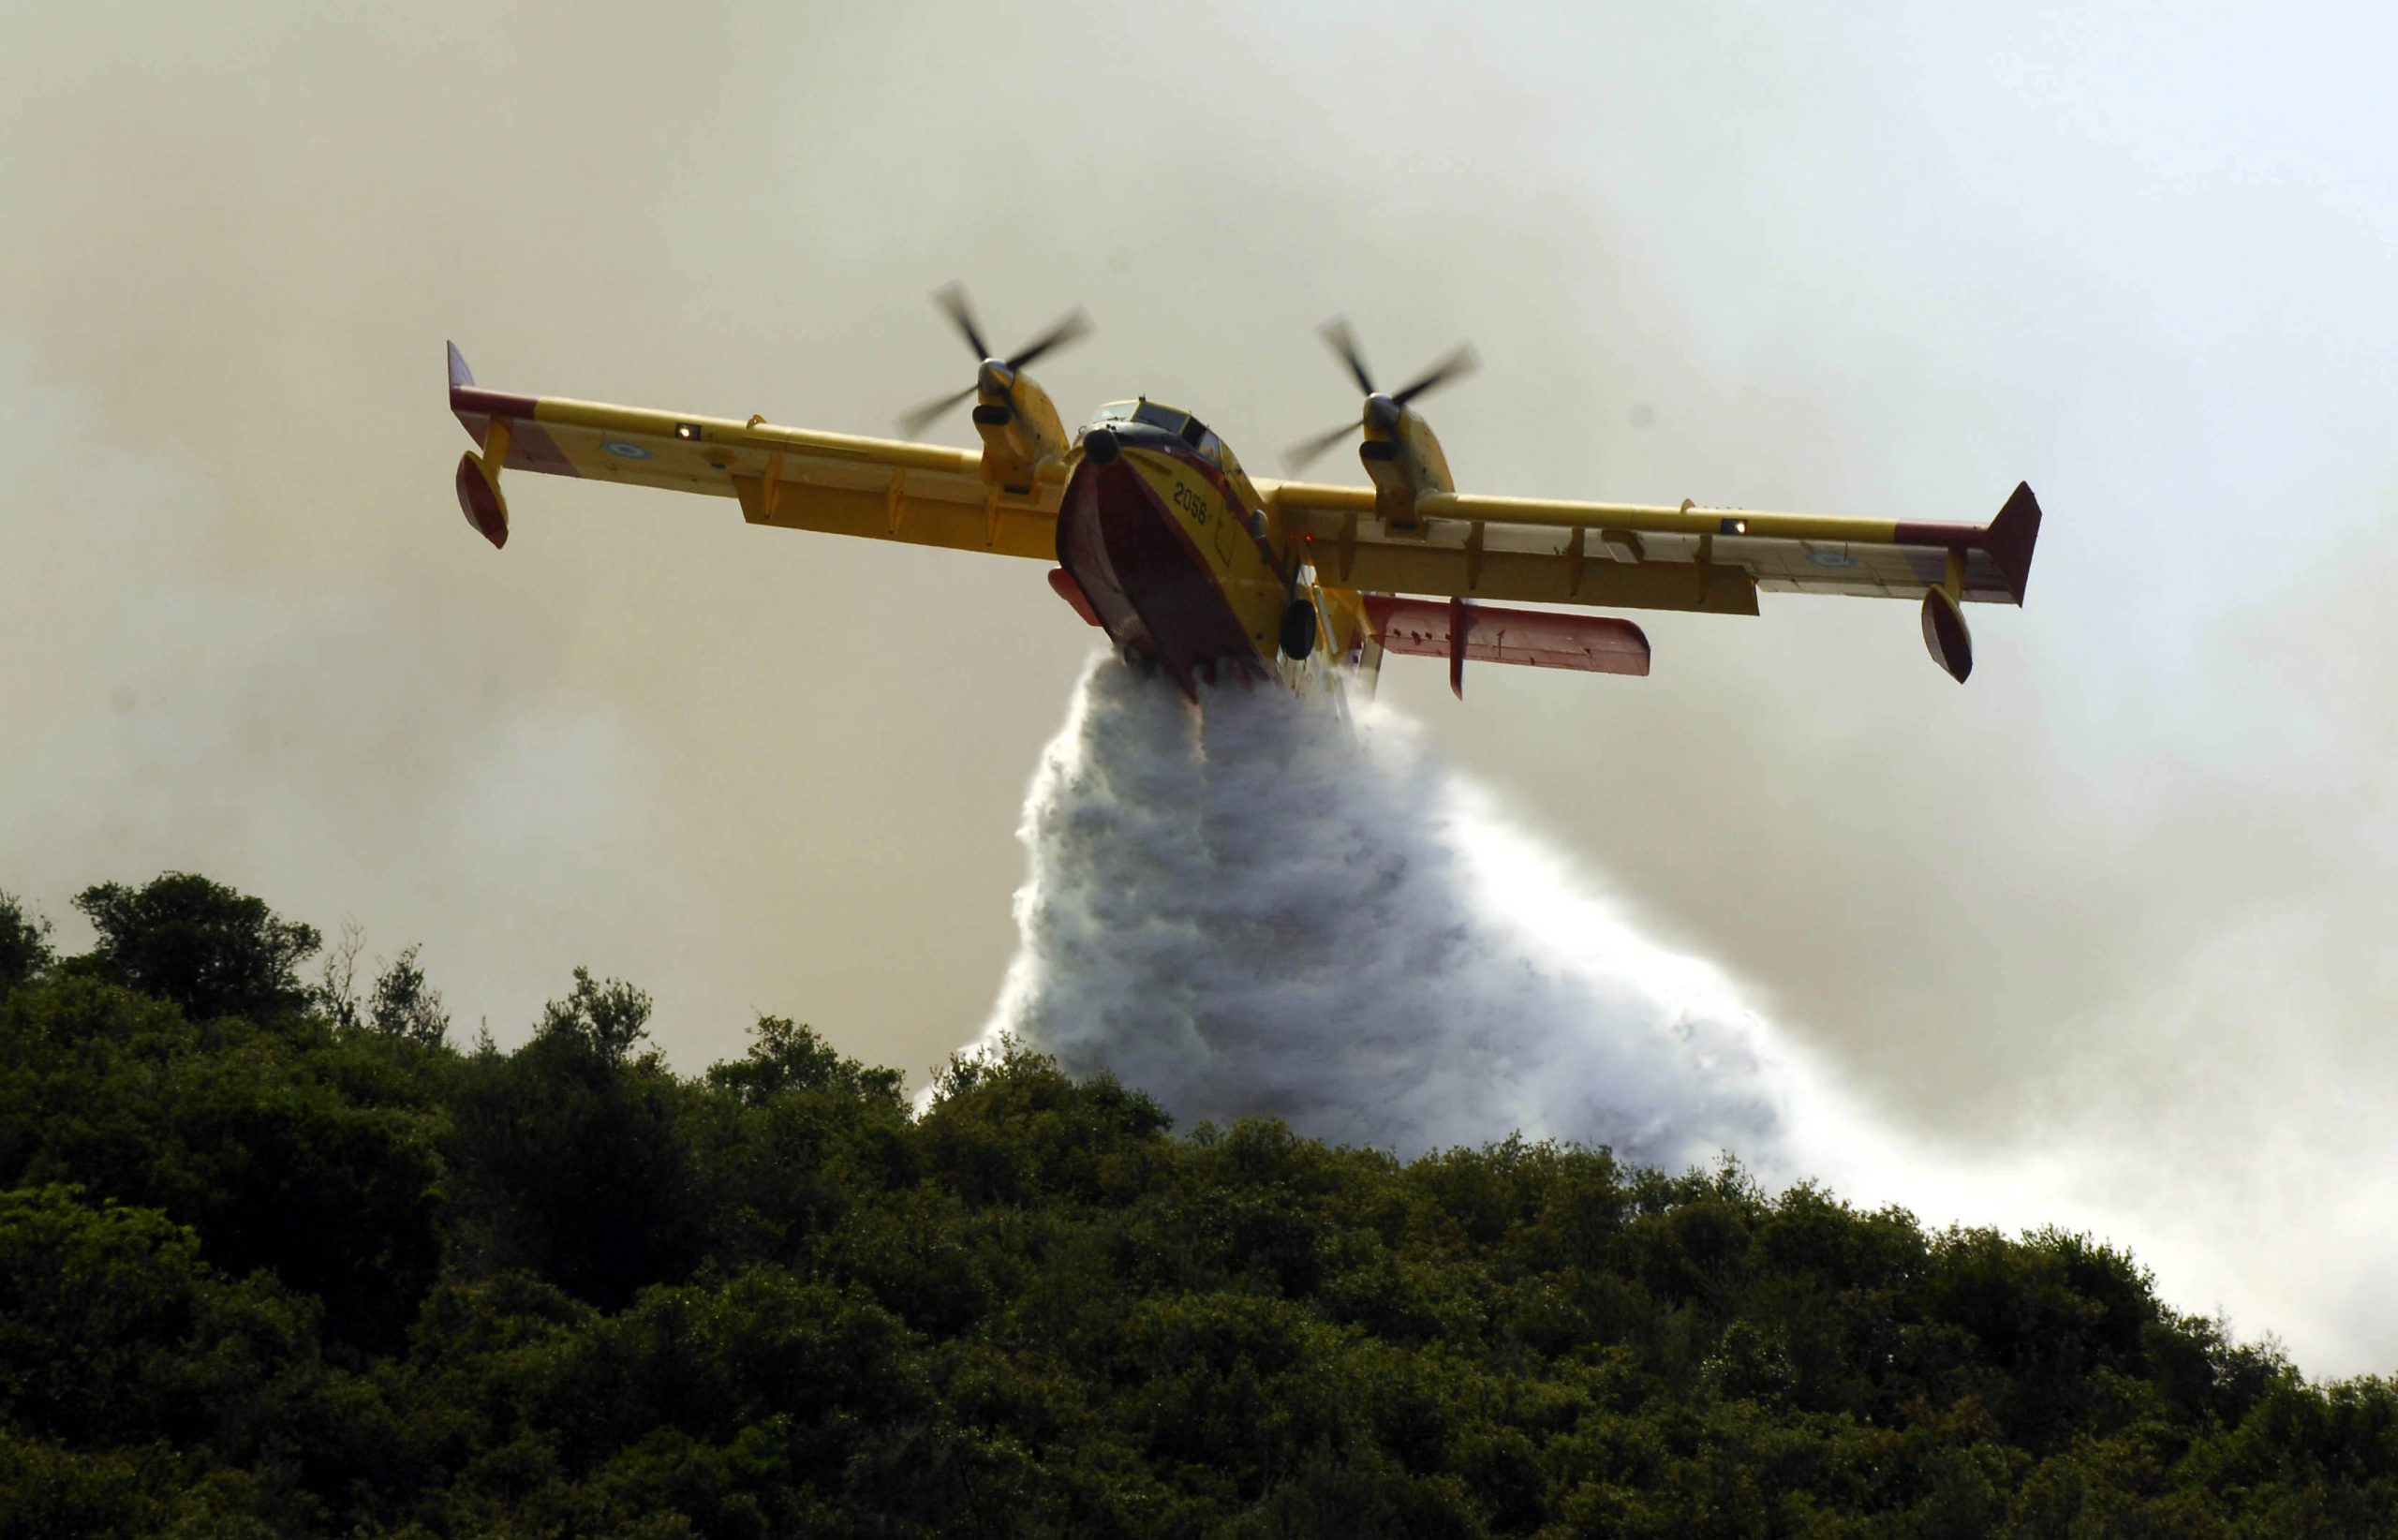 Με χρηματοδότηση της Κομισιόν η αποστολή αεροσκαφών από την Ελλάδα για τις πυρκαγιές στην Αλβανία